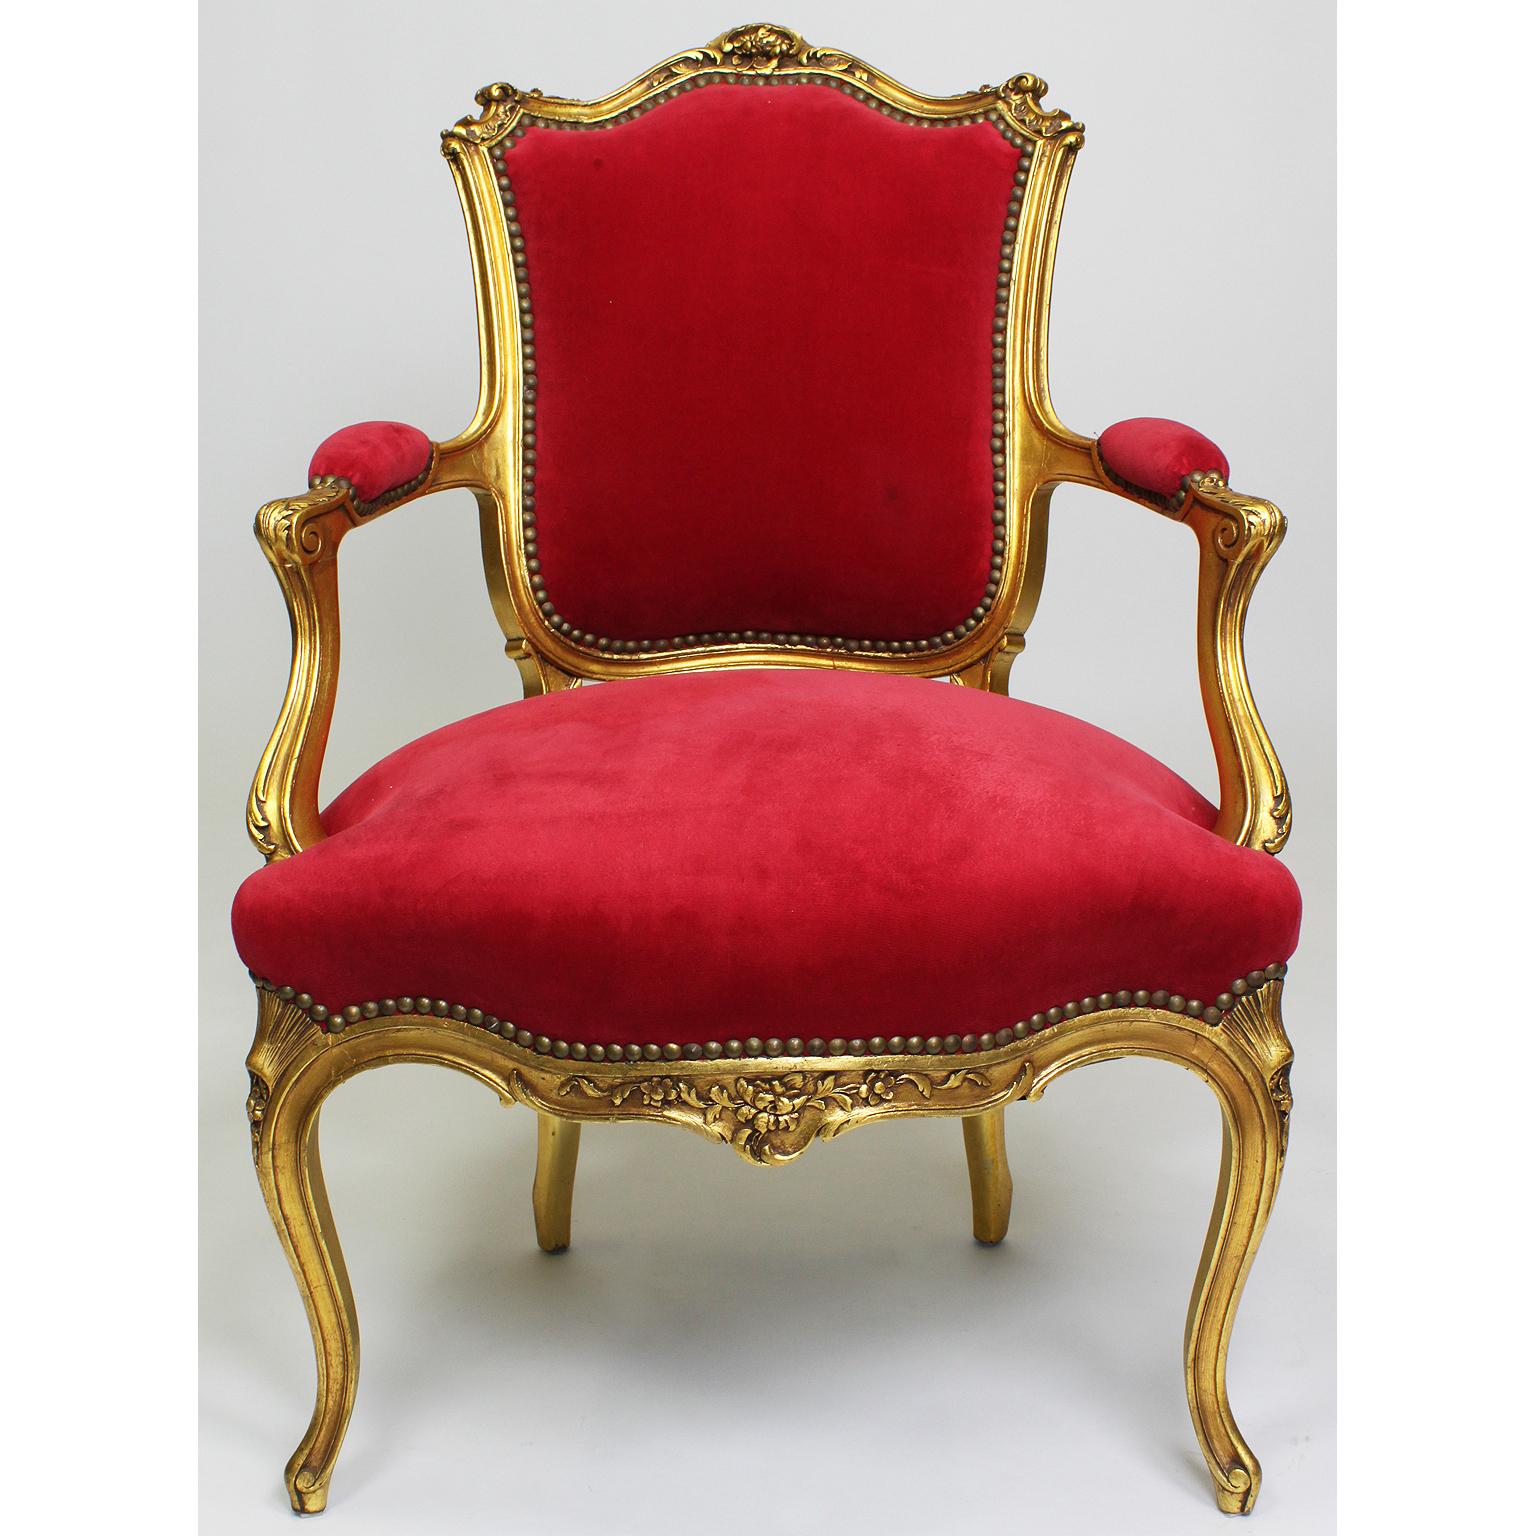 Ein Paar französischer Rokoko-Fauteuils (Sessel) im Stil Louis XV, geschnitzt aus Goldholz. Die aufwändig geschnitzten Holzrahmen mit offen geschwungenen und gepolsterten Armlehnen und Cabrio-Beinen. Gepolstert mit rotem Samt, Paris, um 1900.

Maße: